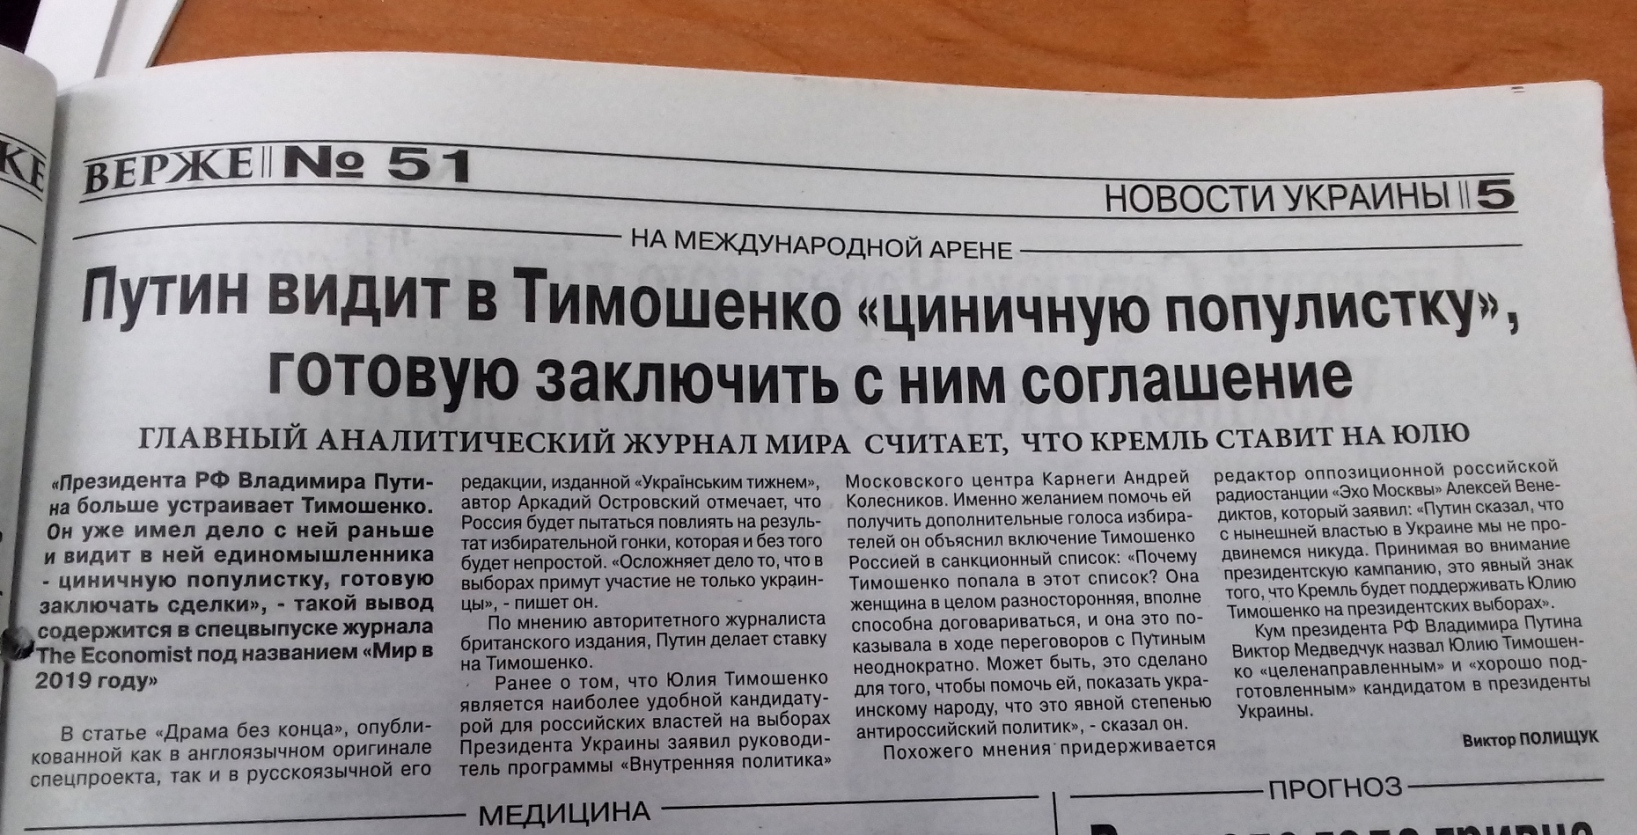 news 14 01 2019 Zaporizhzhia publikaciya v gazeti Verzhe 6